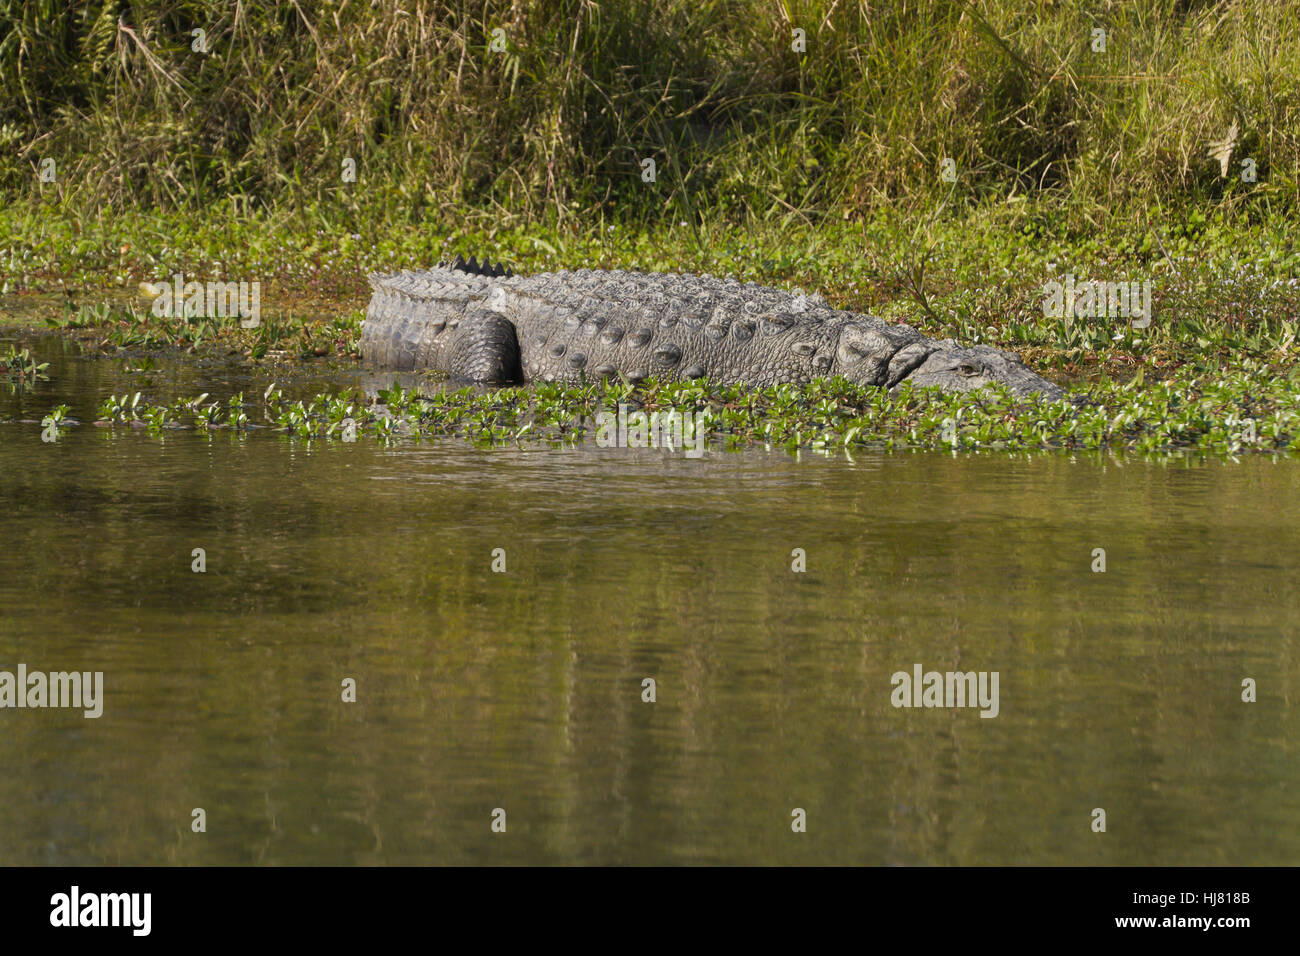 Los reptiles, cocodrilos, reptiles, Nepal, cocodrilos, echte krokodile, crocodylus, Foto de stock